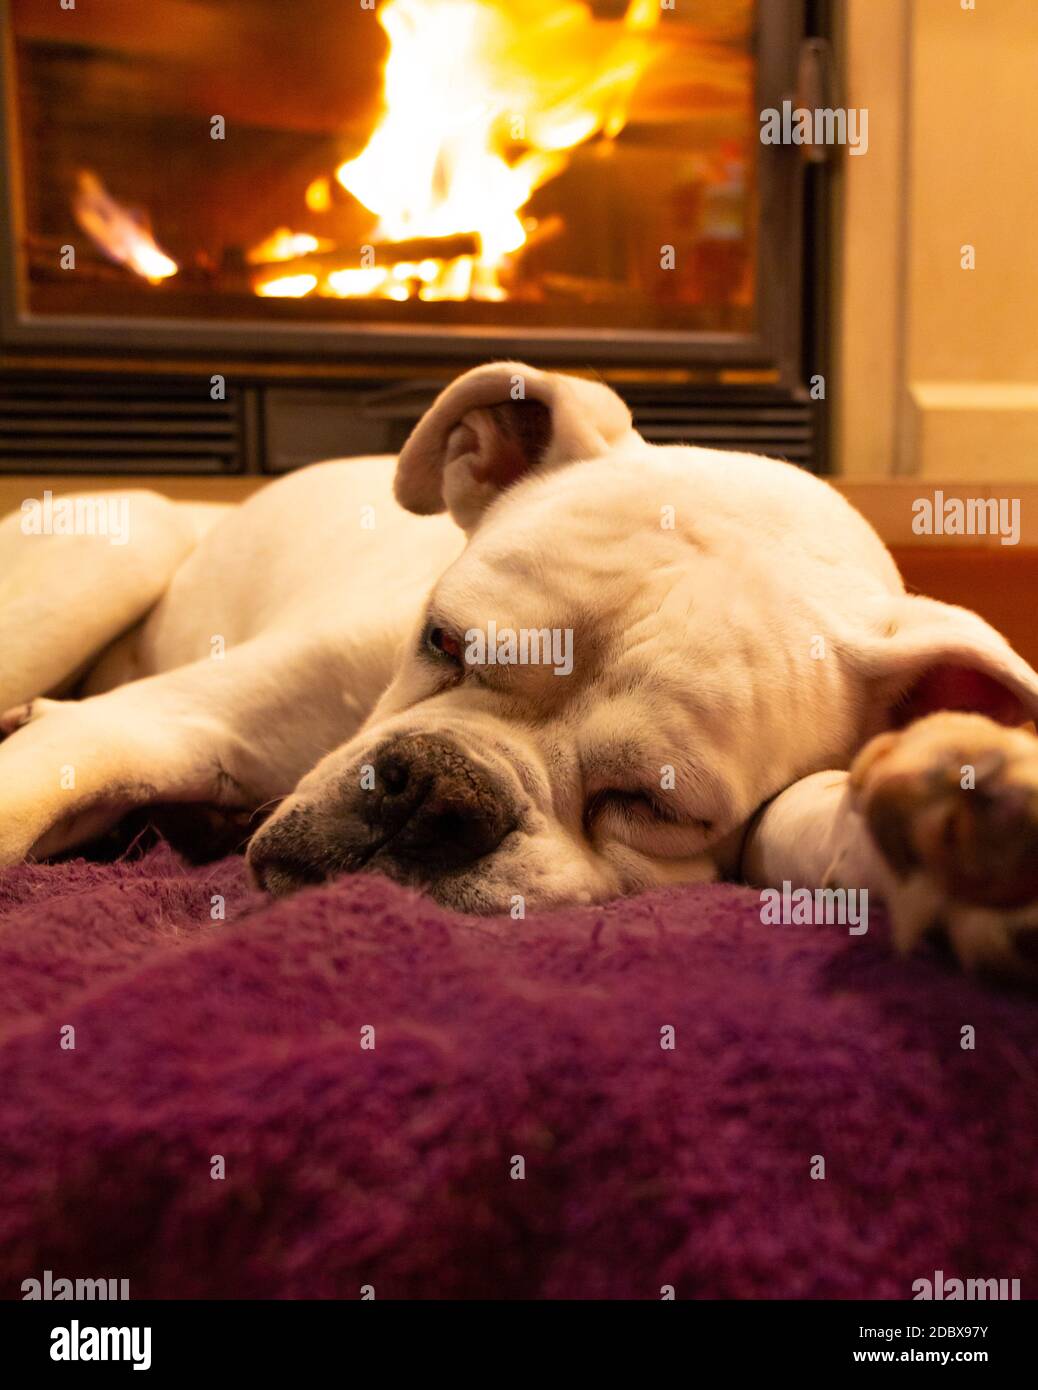 White boxer dog sleeping on a purple rug near the burning fireplace. Resting dog. Stock Photo